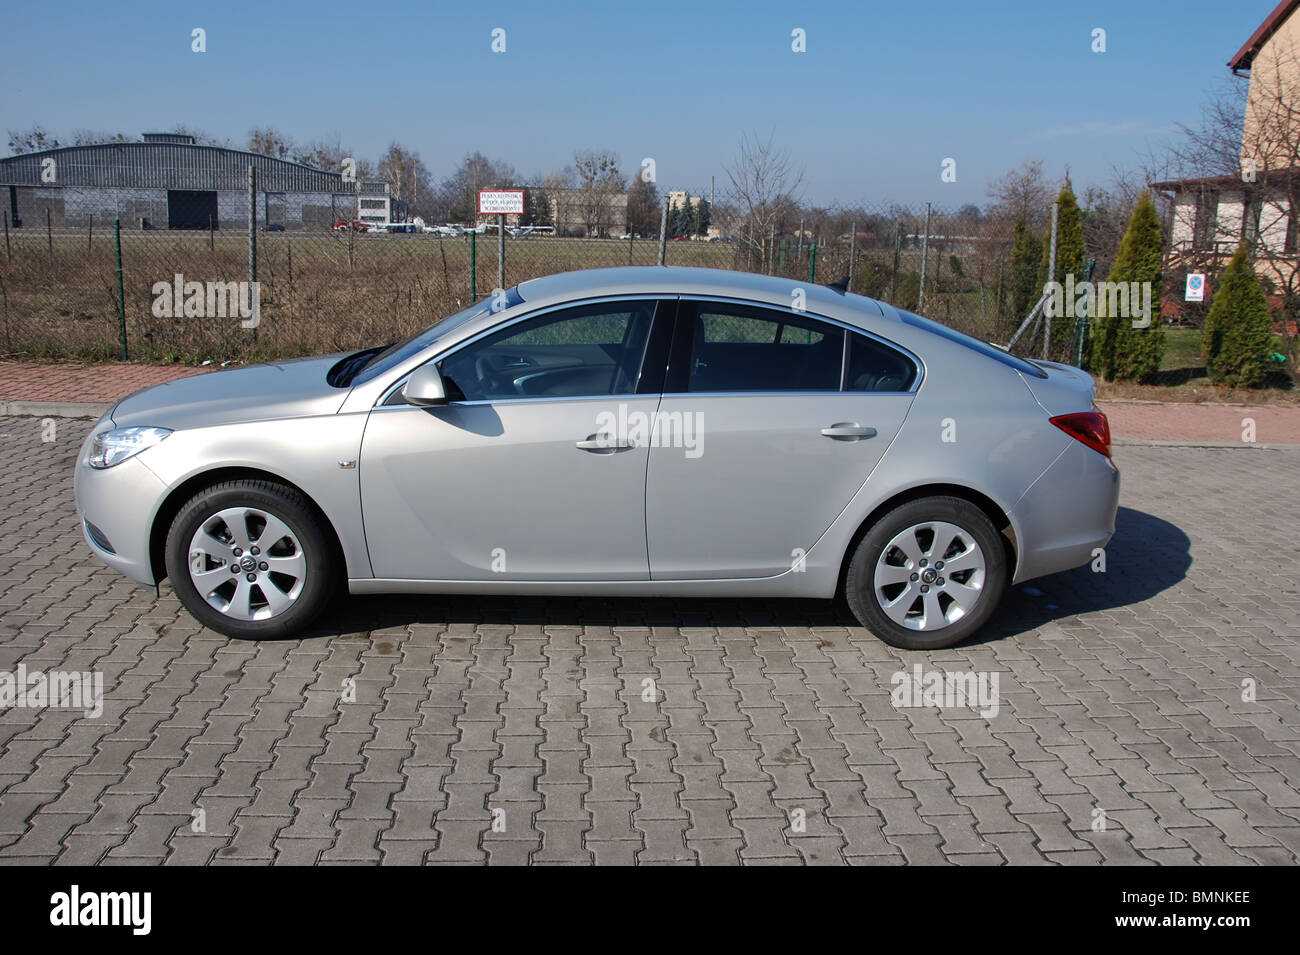 Opel Insignia 1.9 CDTI - 2009 - silver metallic - cinque porte - Tedesco più popolare centro della classe auto, segmento D - su strada Foto Stock